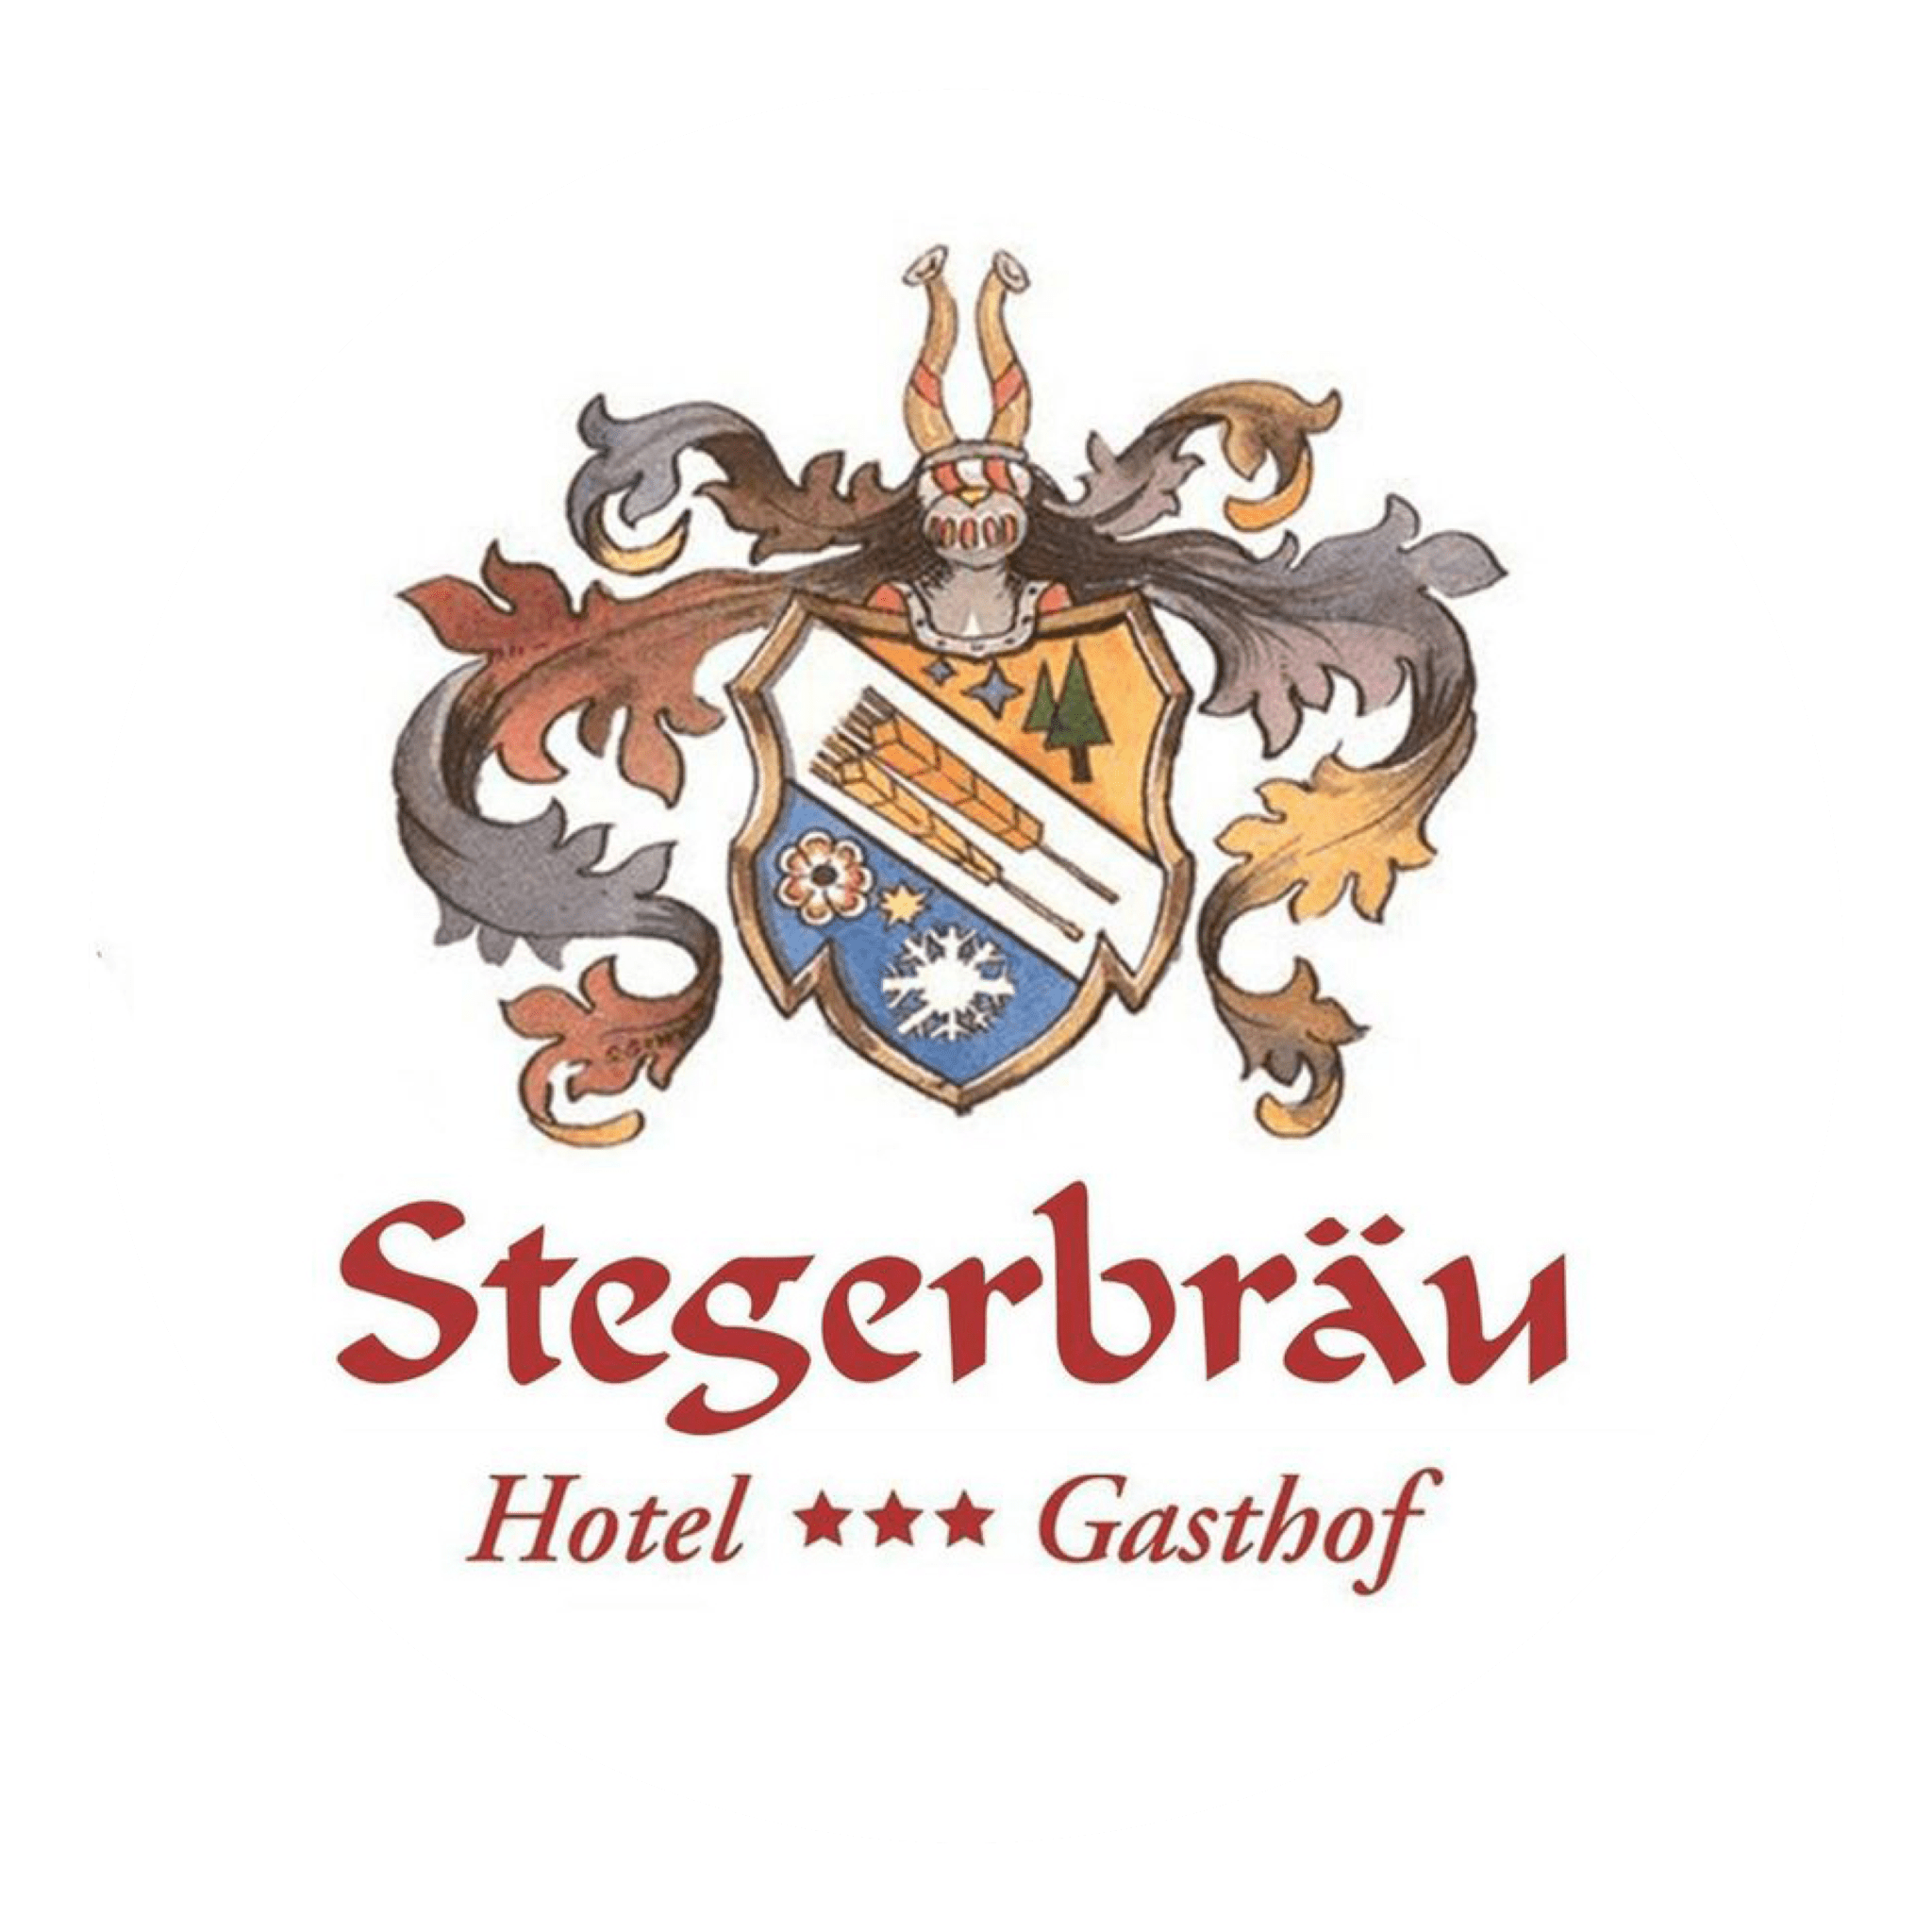 Hotel & Gasthof Stegerbräu